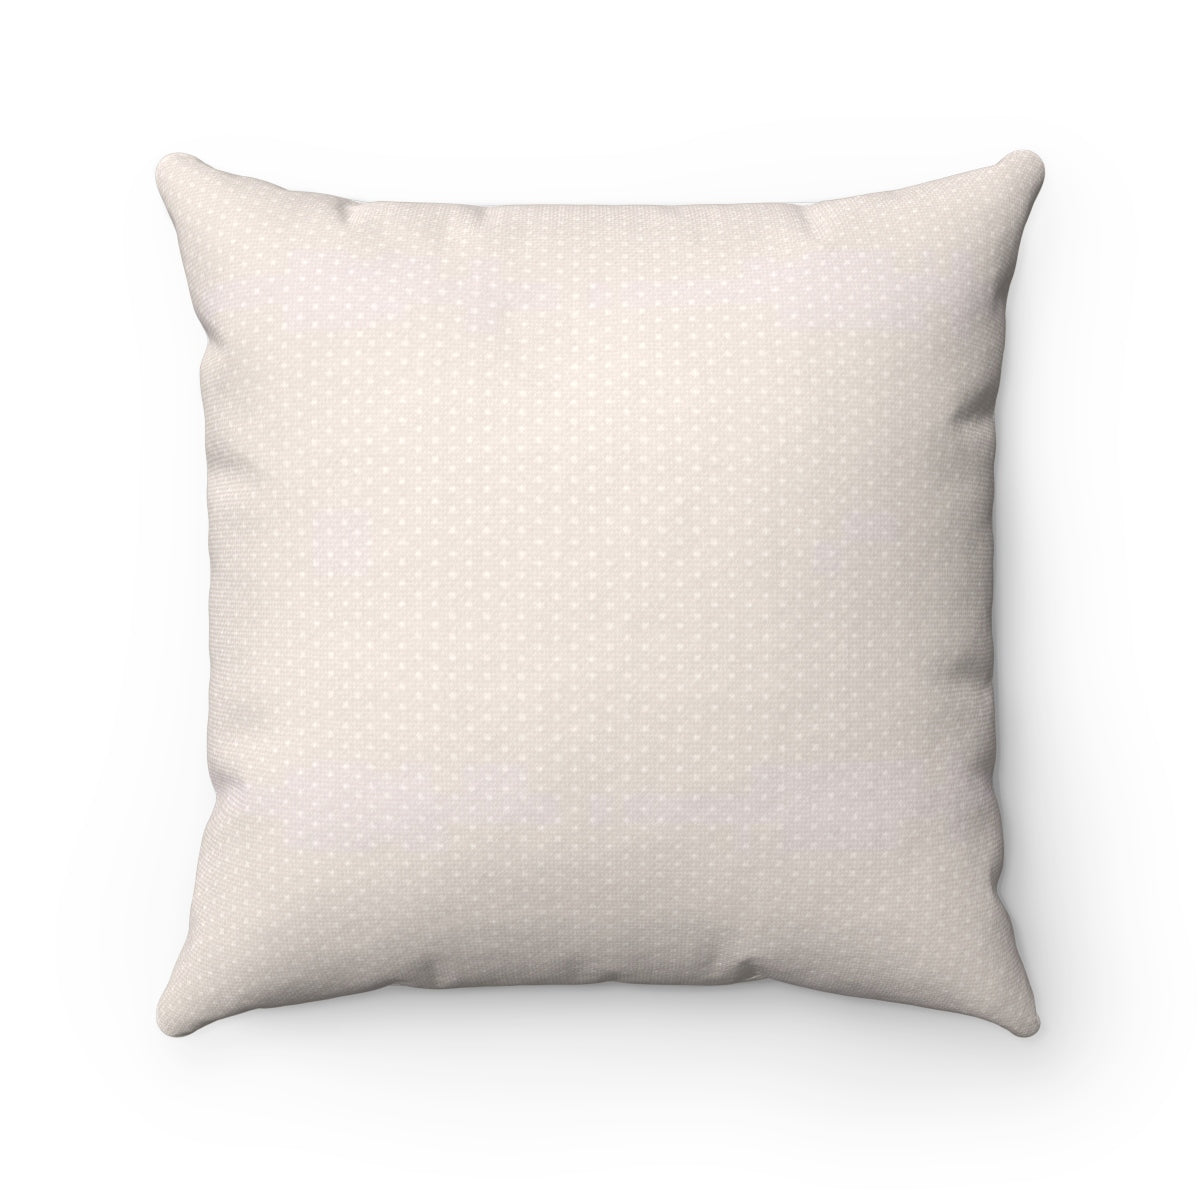 Pink Throw Pillow - Liz Kapiloto Art & Design